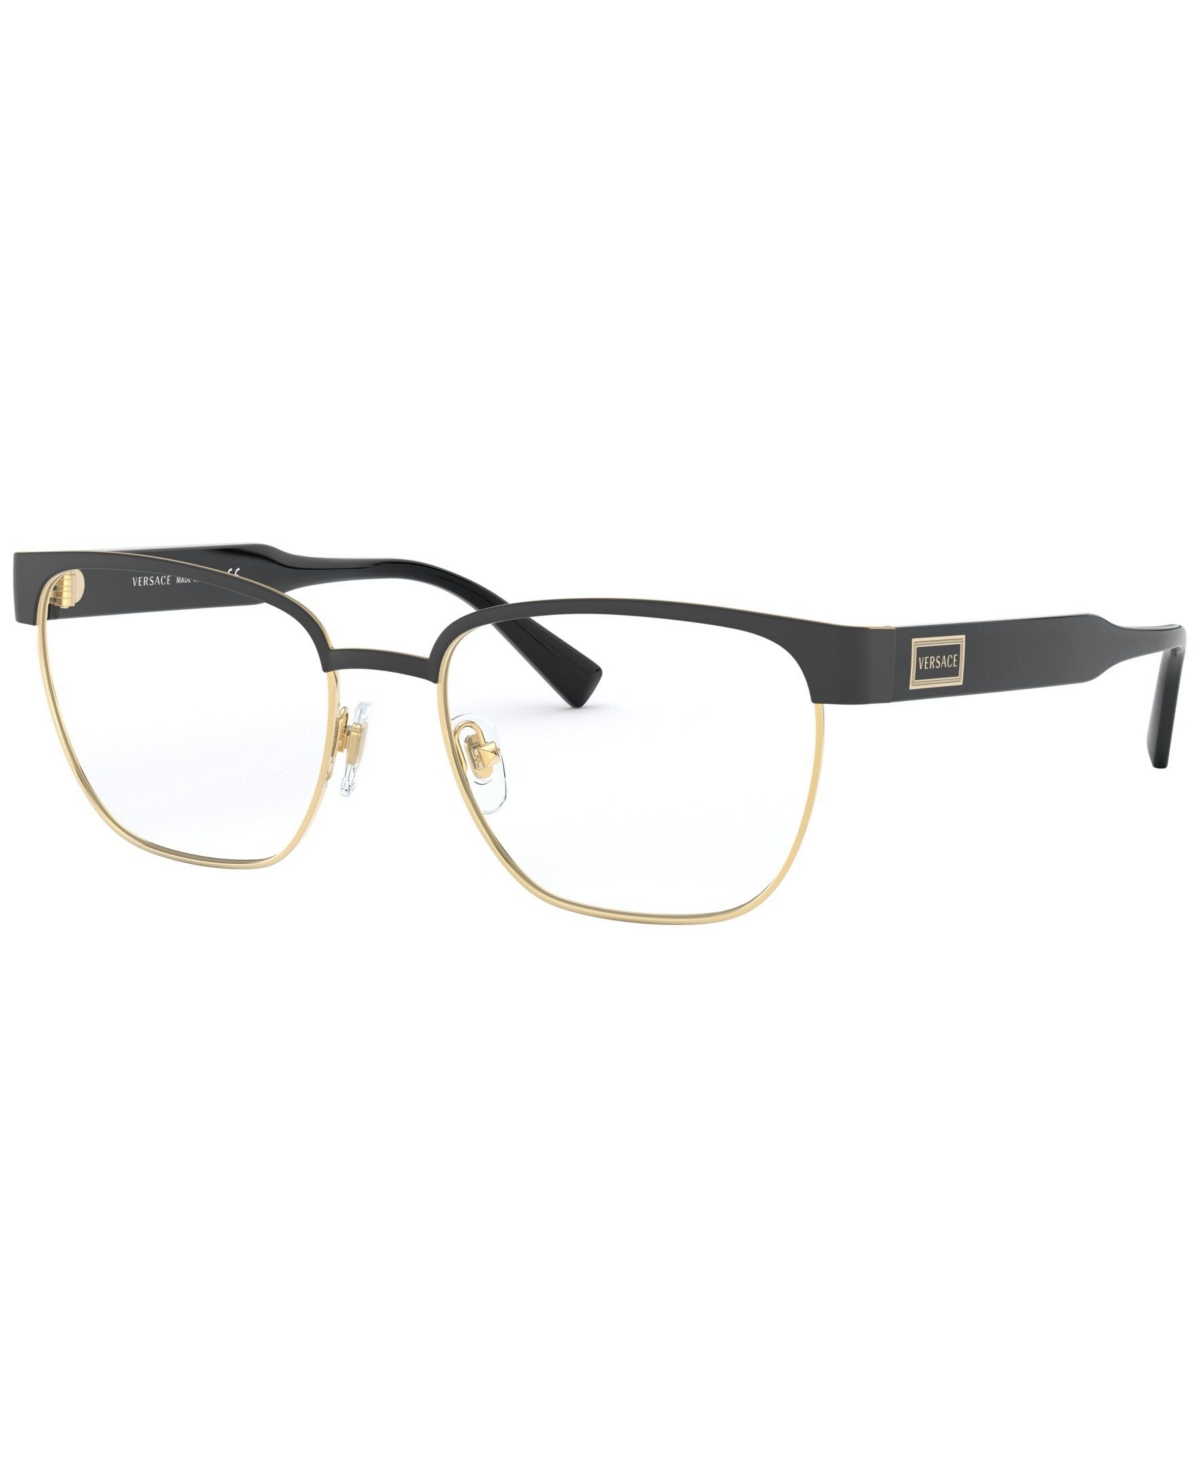 VE1264 Men's Pillow Eyeglasses - Black Gold-Tone